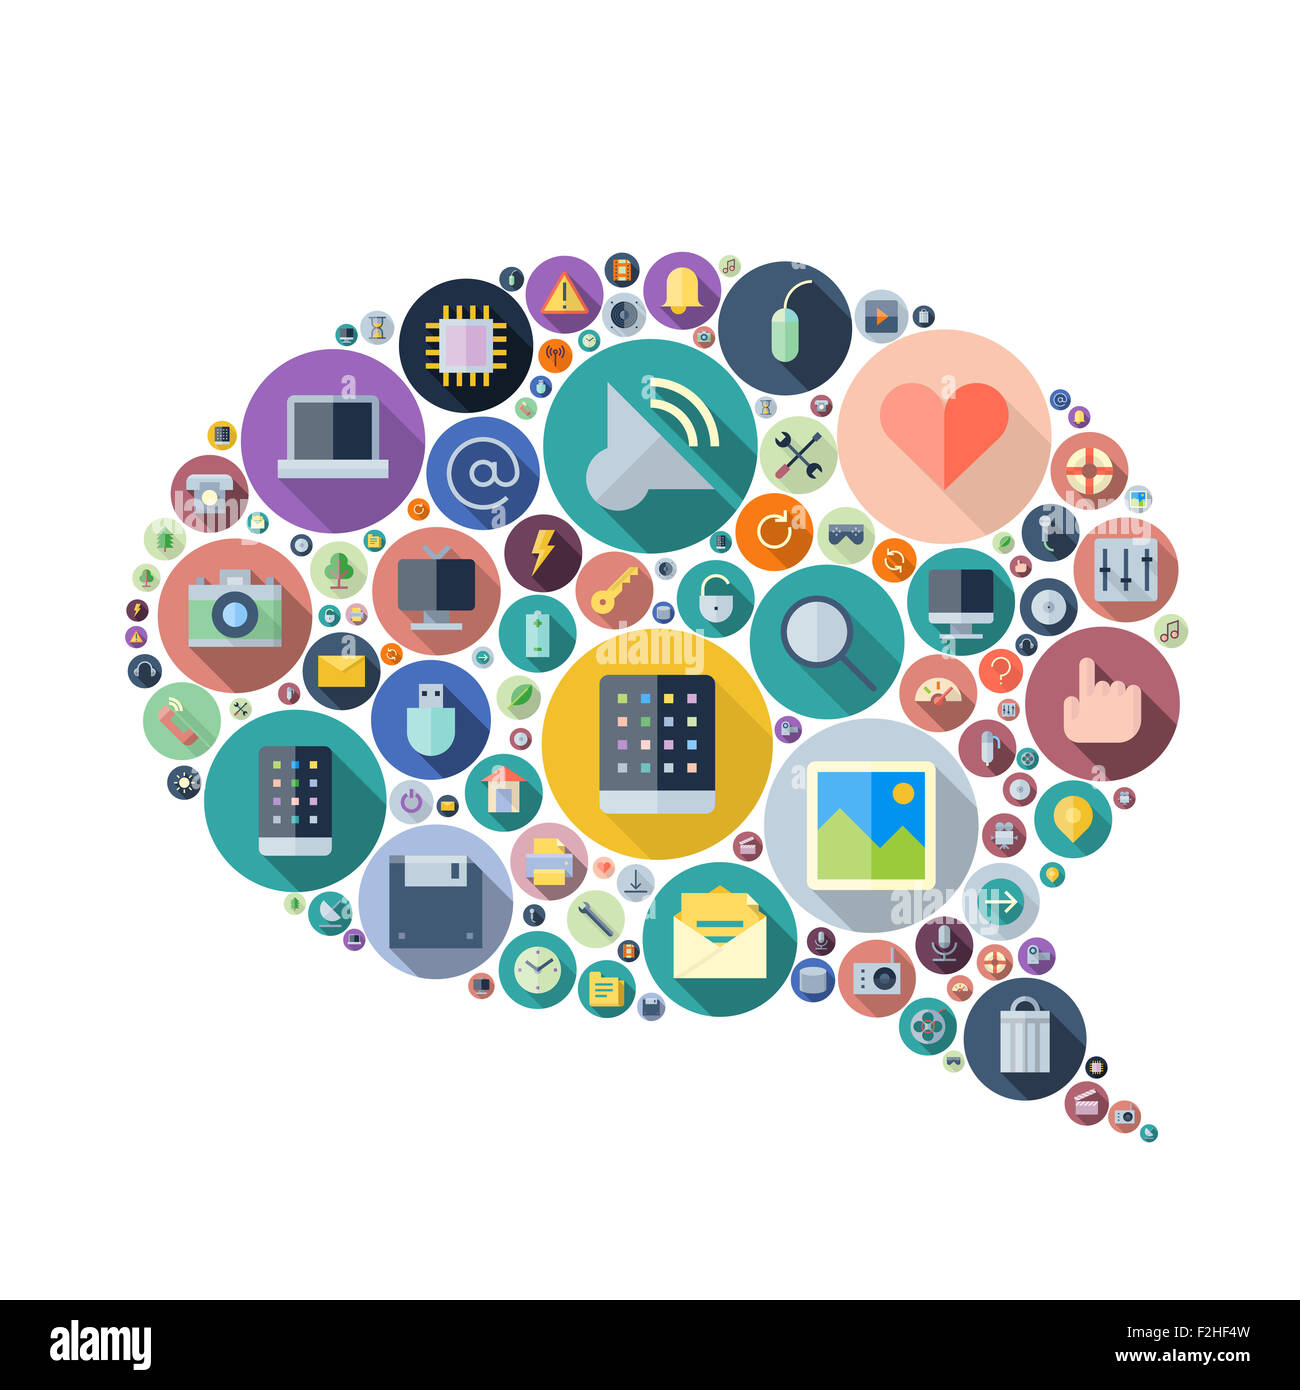 Symbole für Technologie und elektronischen Geräten in Rede Blase Form angeordnet. Stockfoto